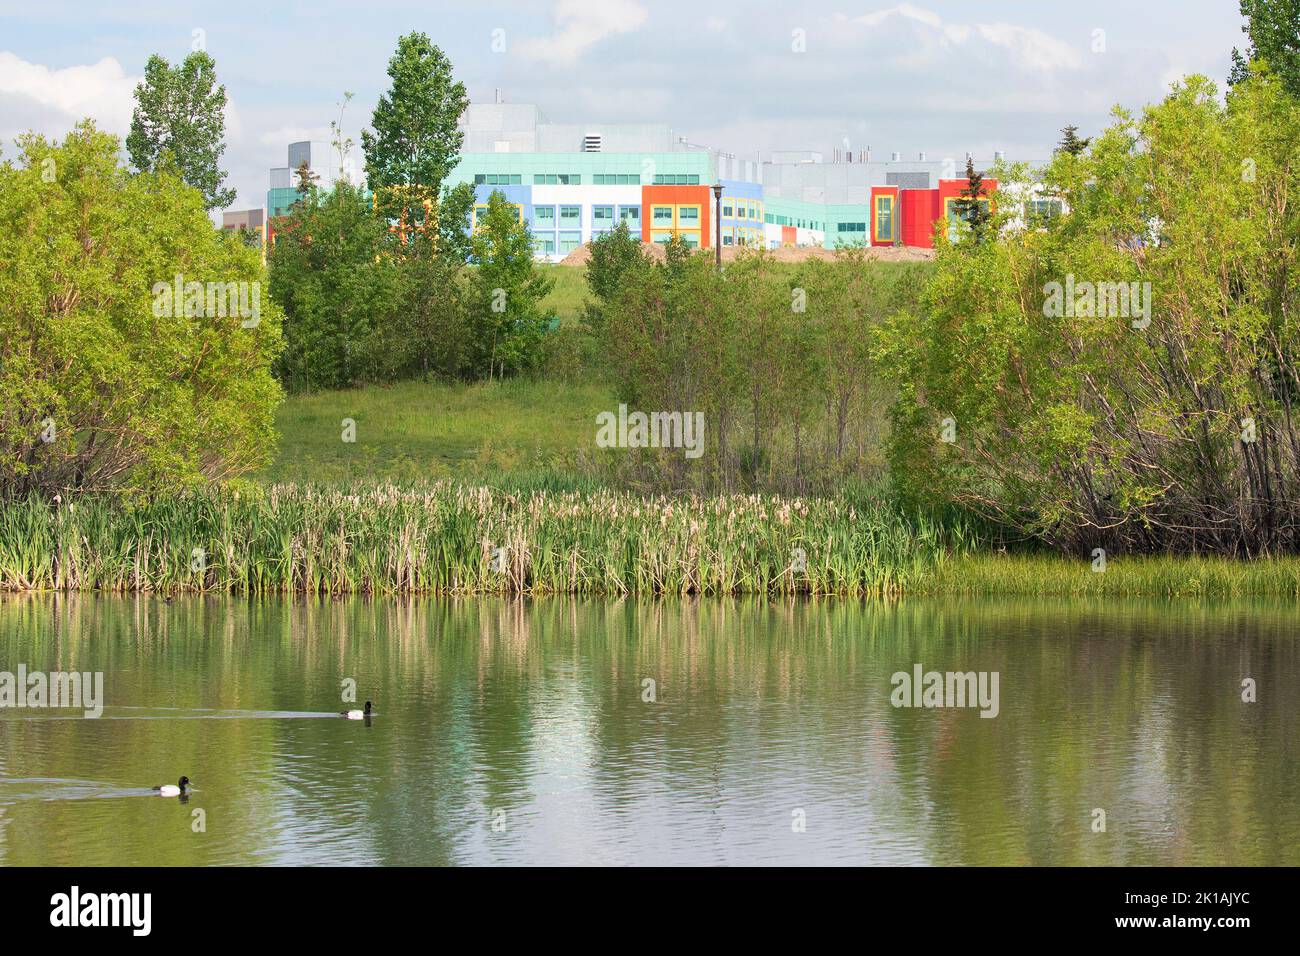 Il laghetto della città, costruito per catturare le acque piovane, migliorare la qualità dell'acqua e prevenire le alluvioni, fornisce anche spazi verdi urbani con habitat naturale paludoso Foto Stock